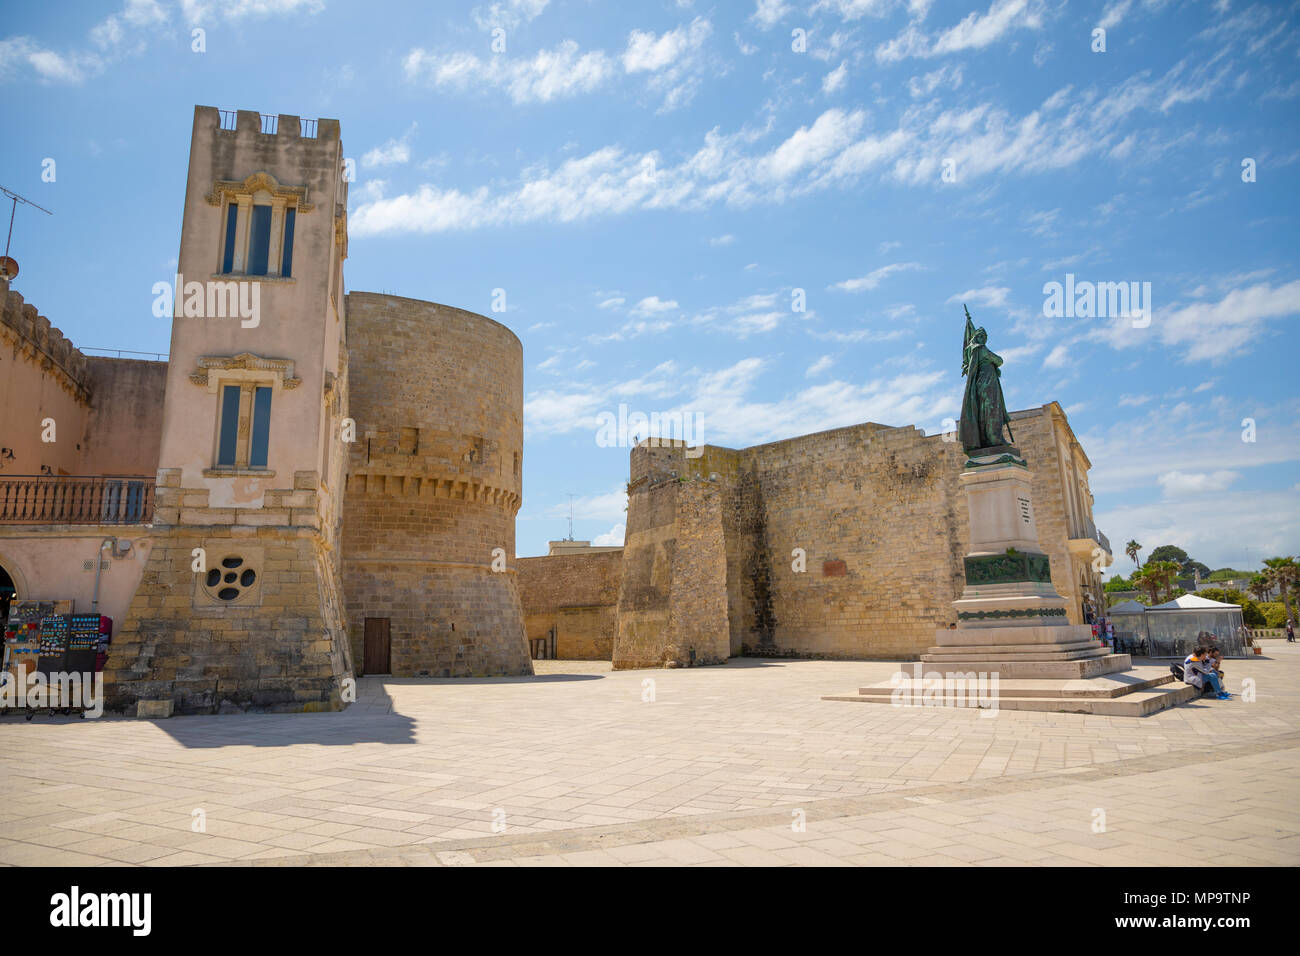 Otranto, Italie - 6.05.2018 : Château Aragonais d'Otrante dans la partie sud de l'Italie, l'Europe Banque D'Images